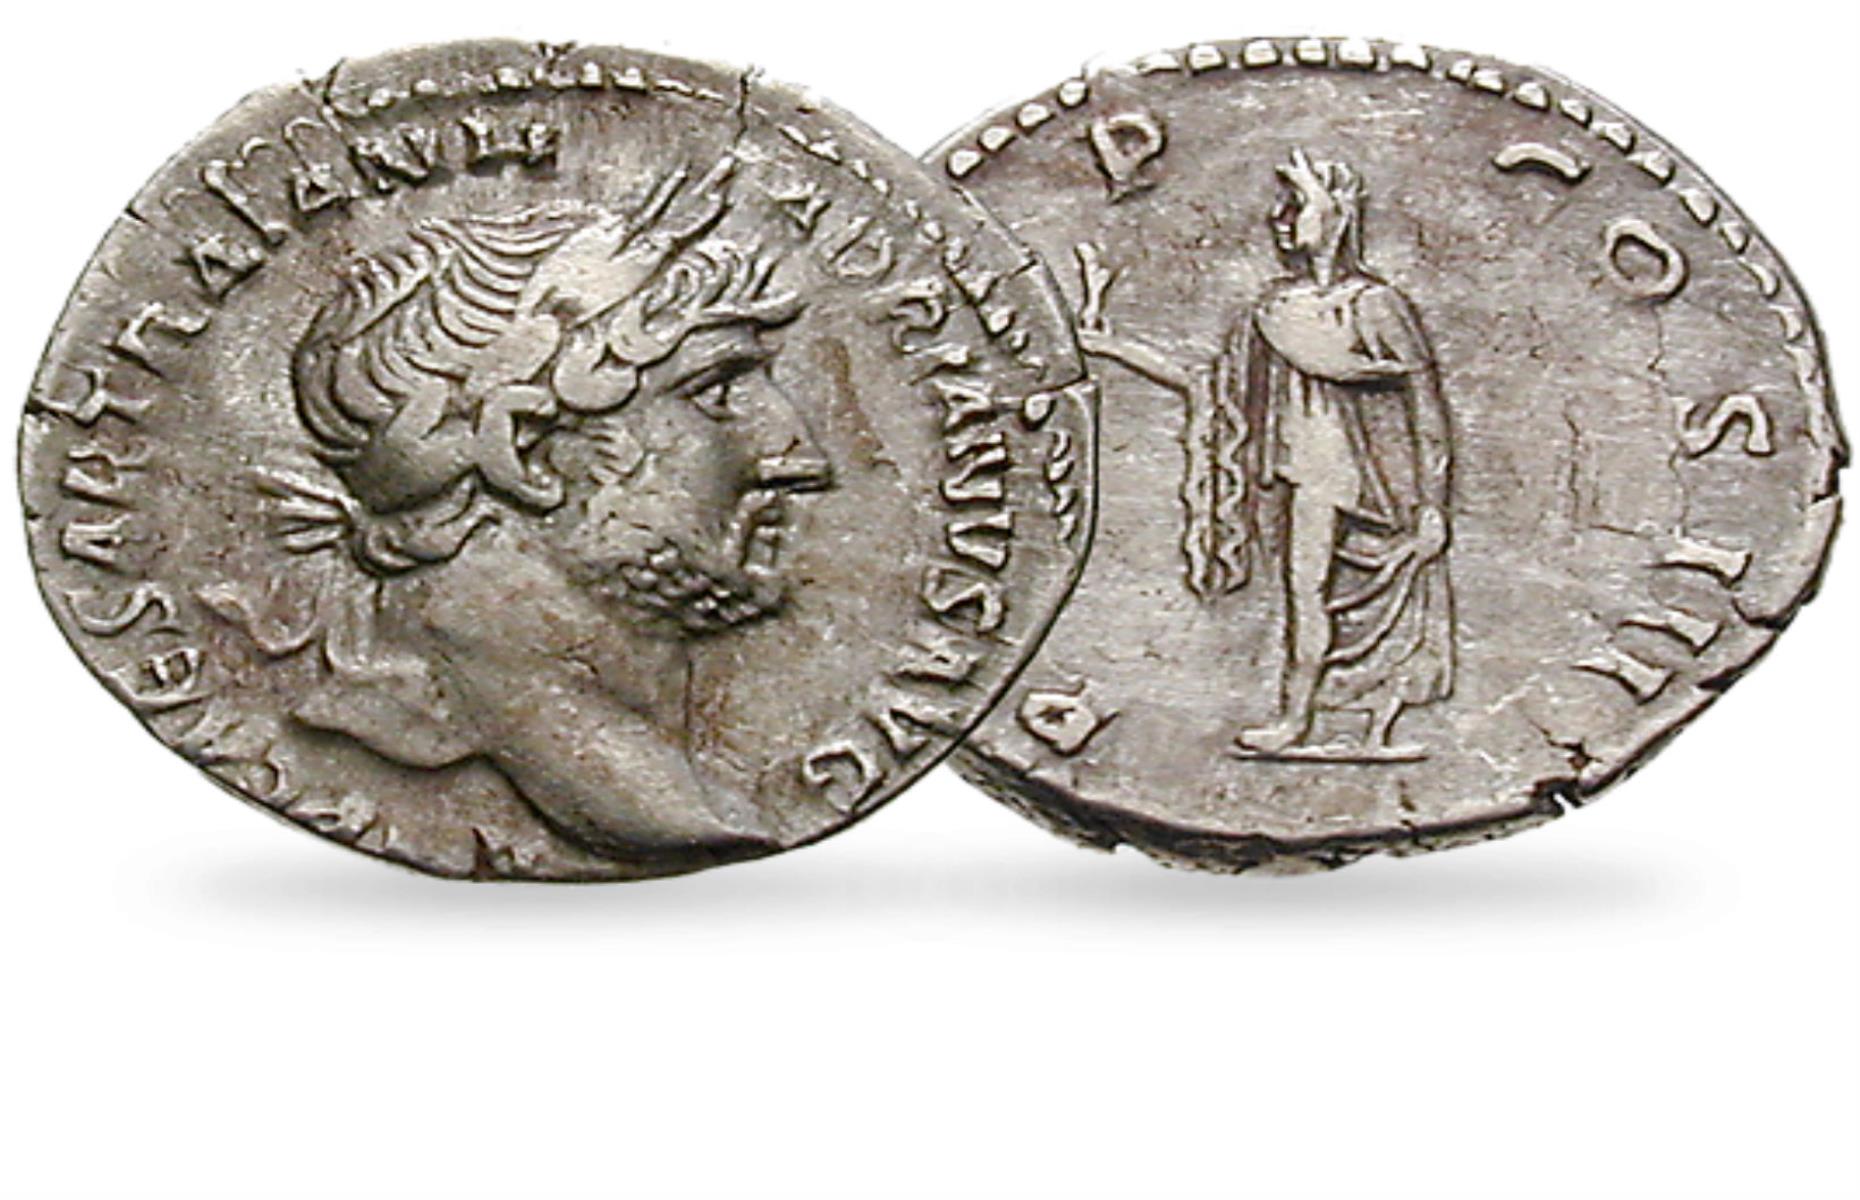 Emperor Hadrian Roman Coin - worth £320